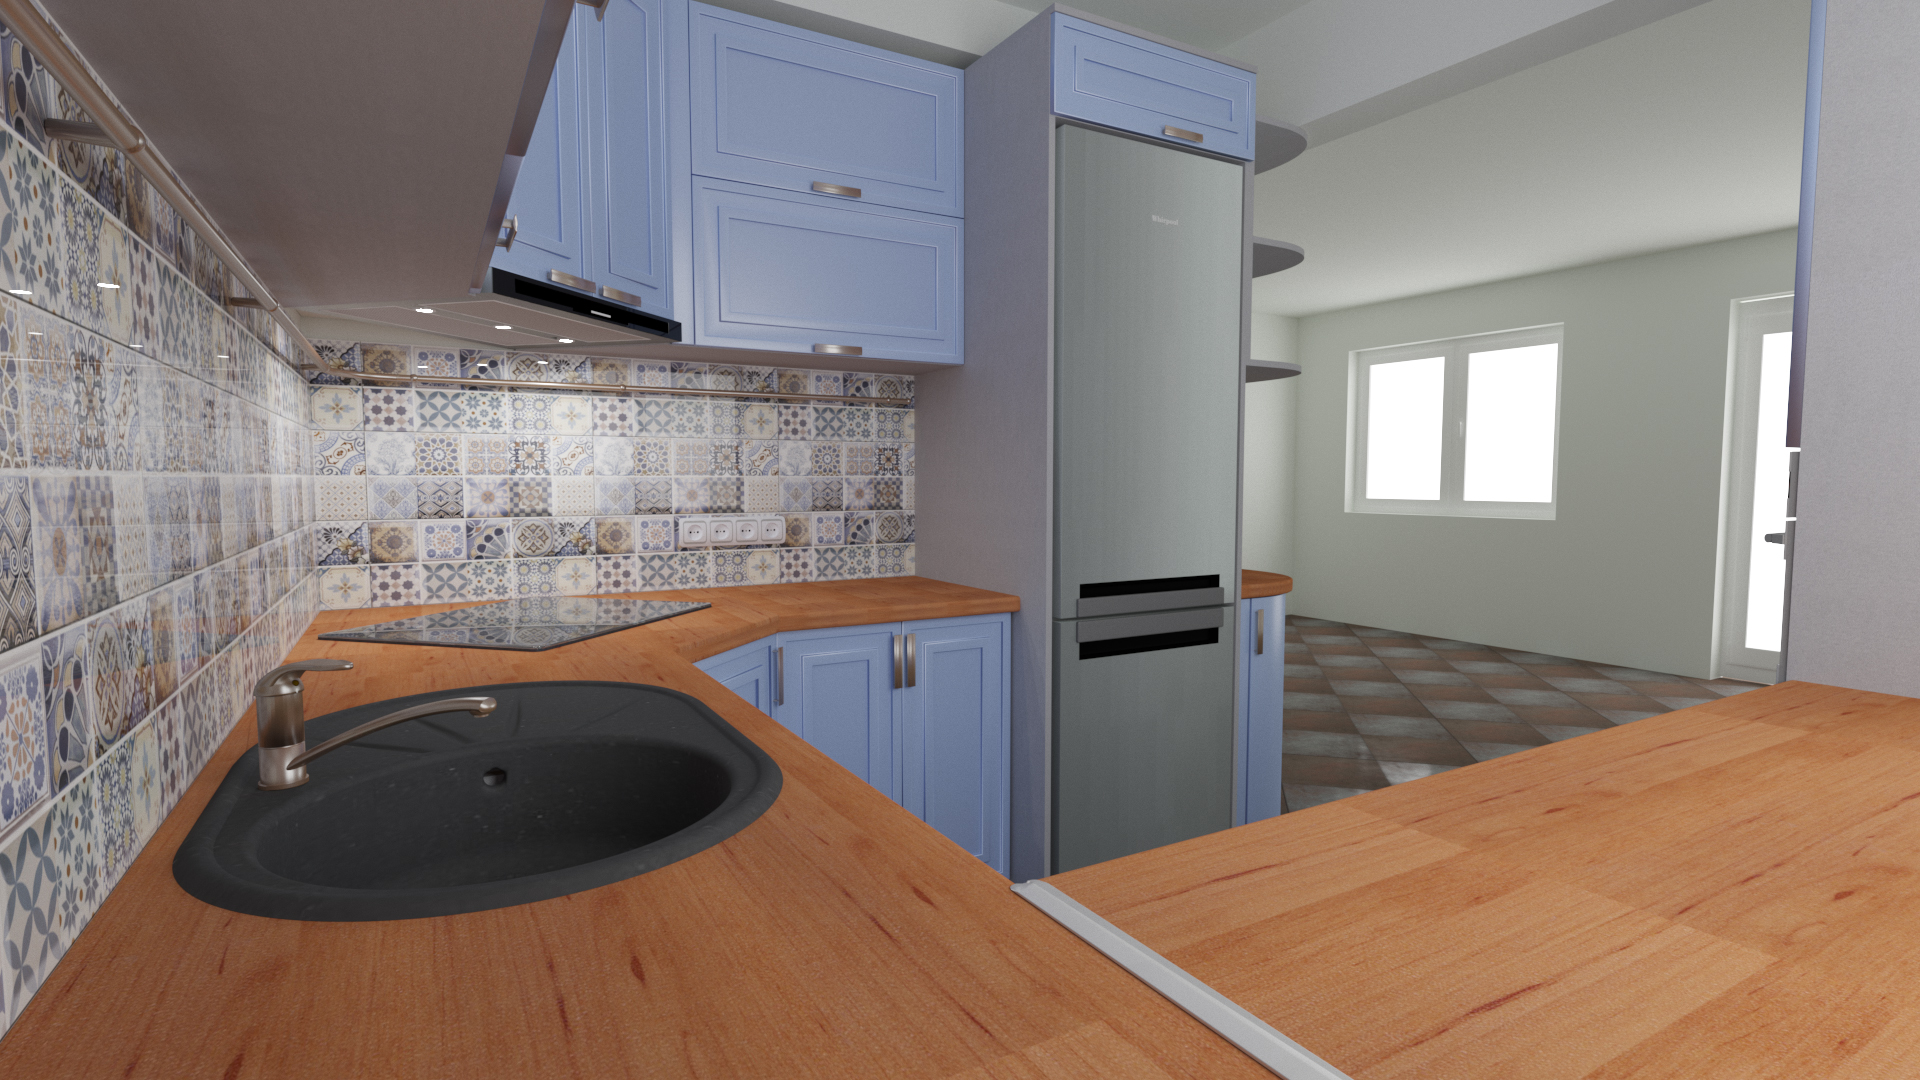 A cozinha no chasnom casa em 3d max corona render imagem